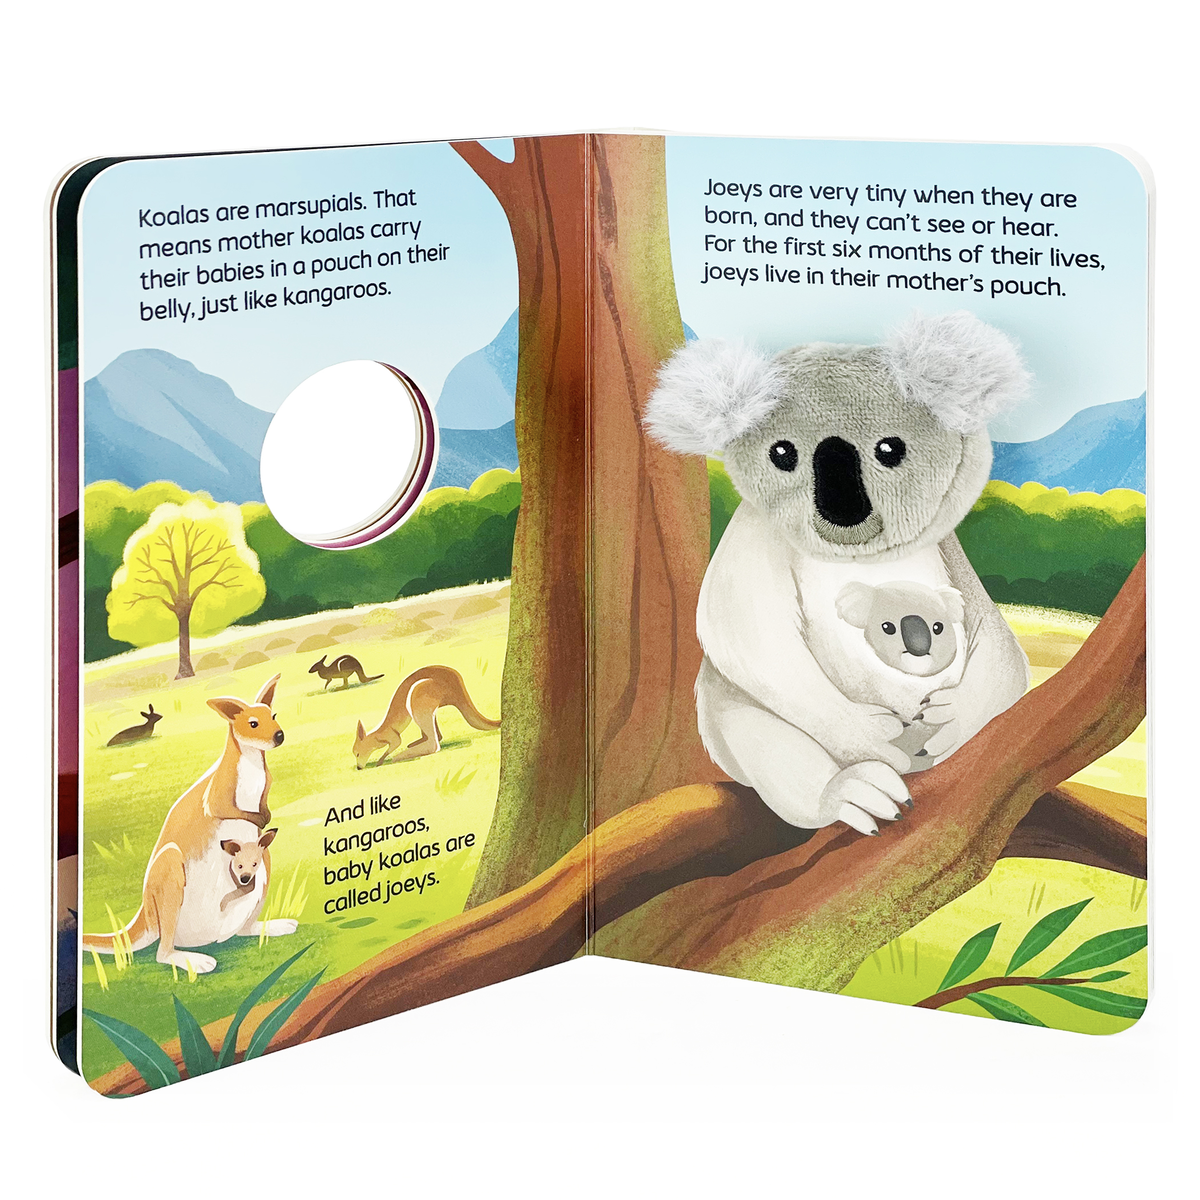 Cottage Door Press - Jane & Me Koala Family Finger Puppet Book (Jane Goodall)